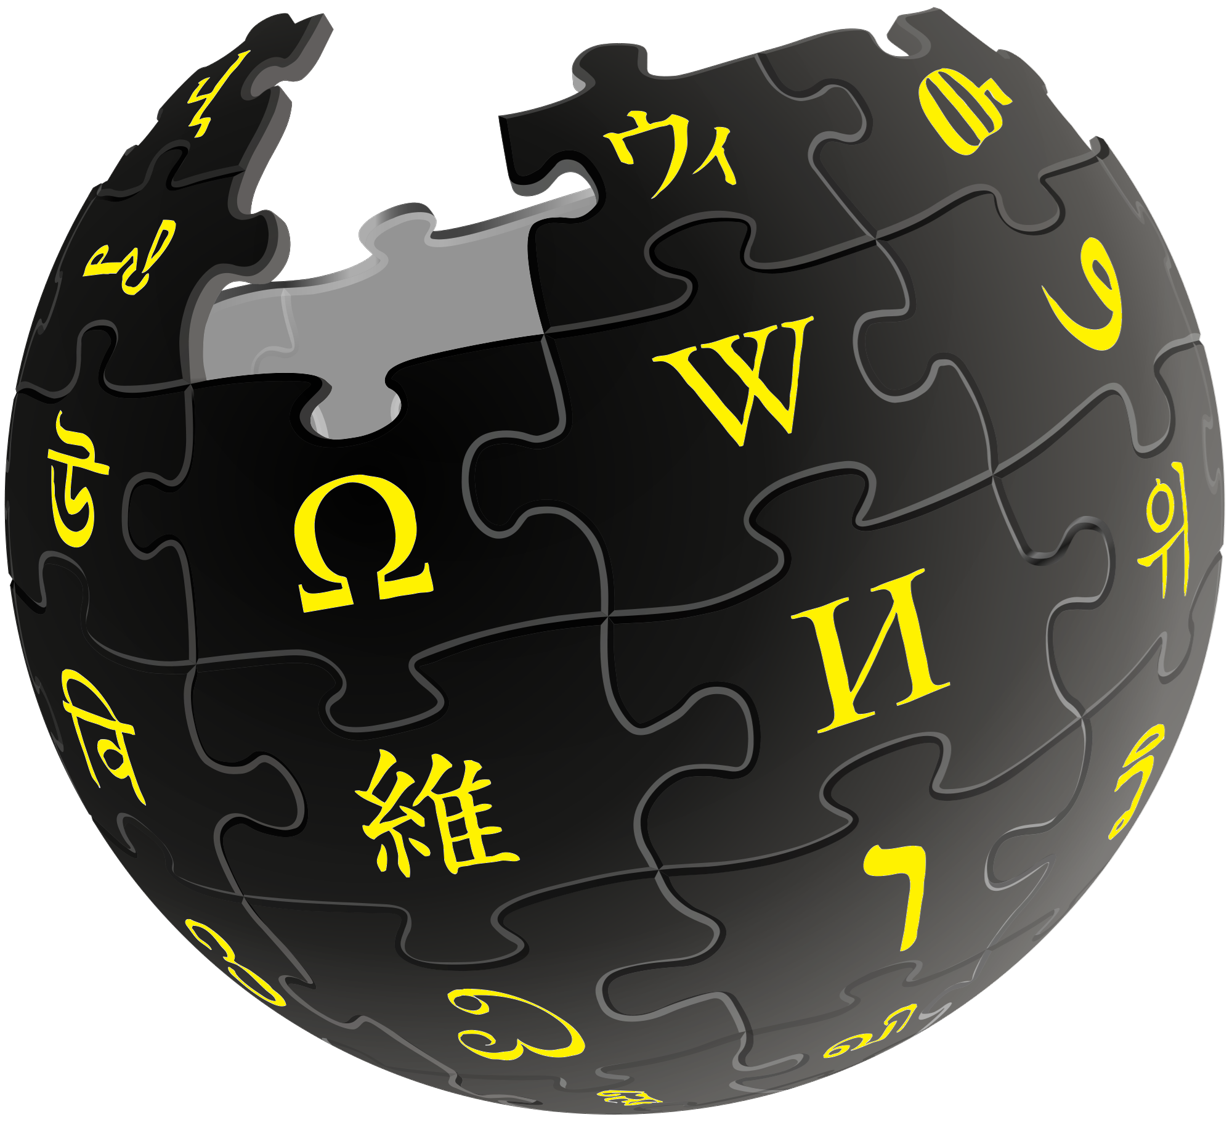 Https www wikipedia. Википедия логотип. Википедия. Википедия картинки. Vikipeedia.